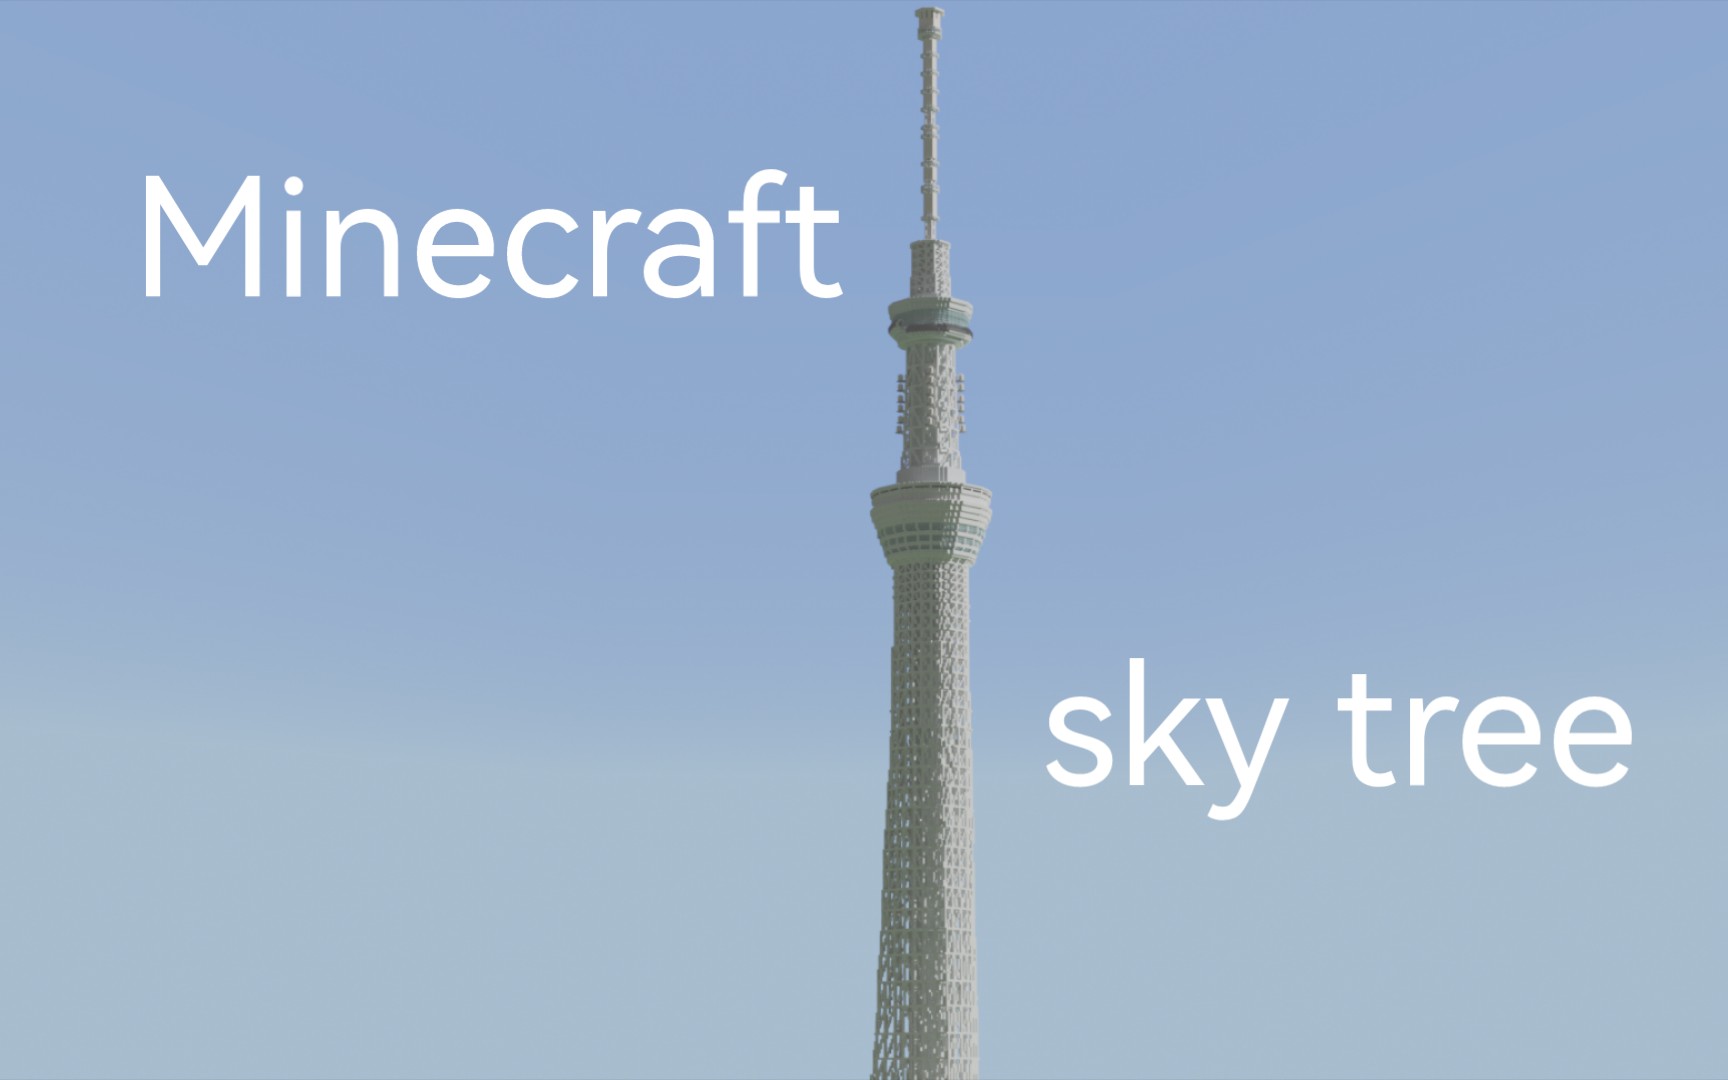 MC x 世界最高电视塔 sky tree